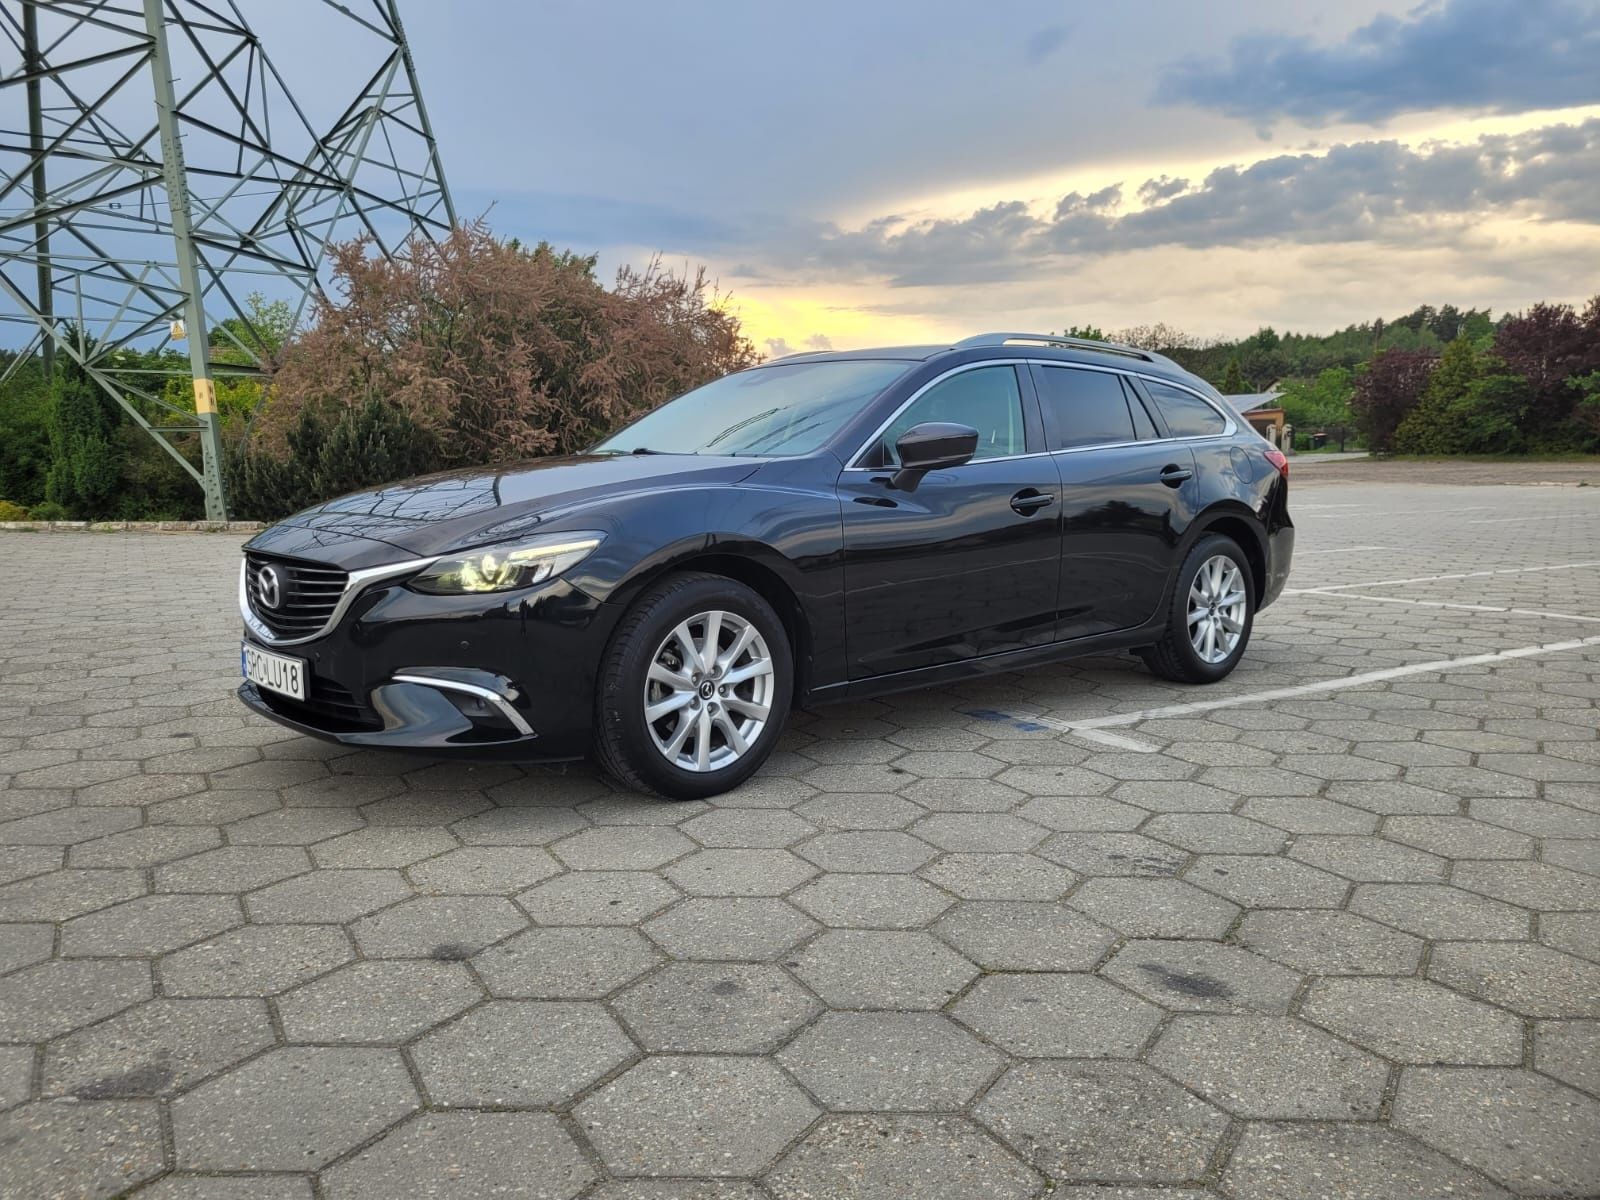 Mazda 6 niski przebieg 2.0 benzyna raport ADNA